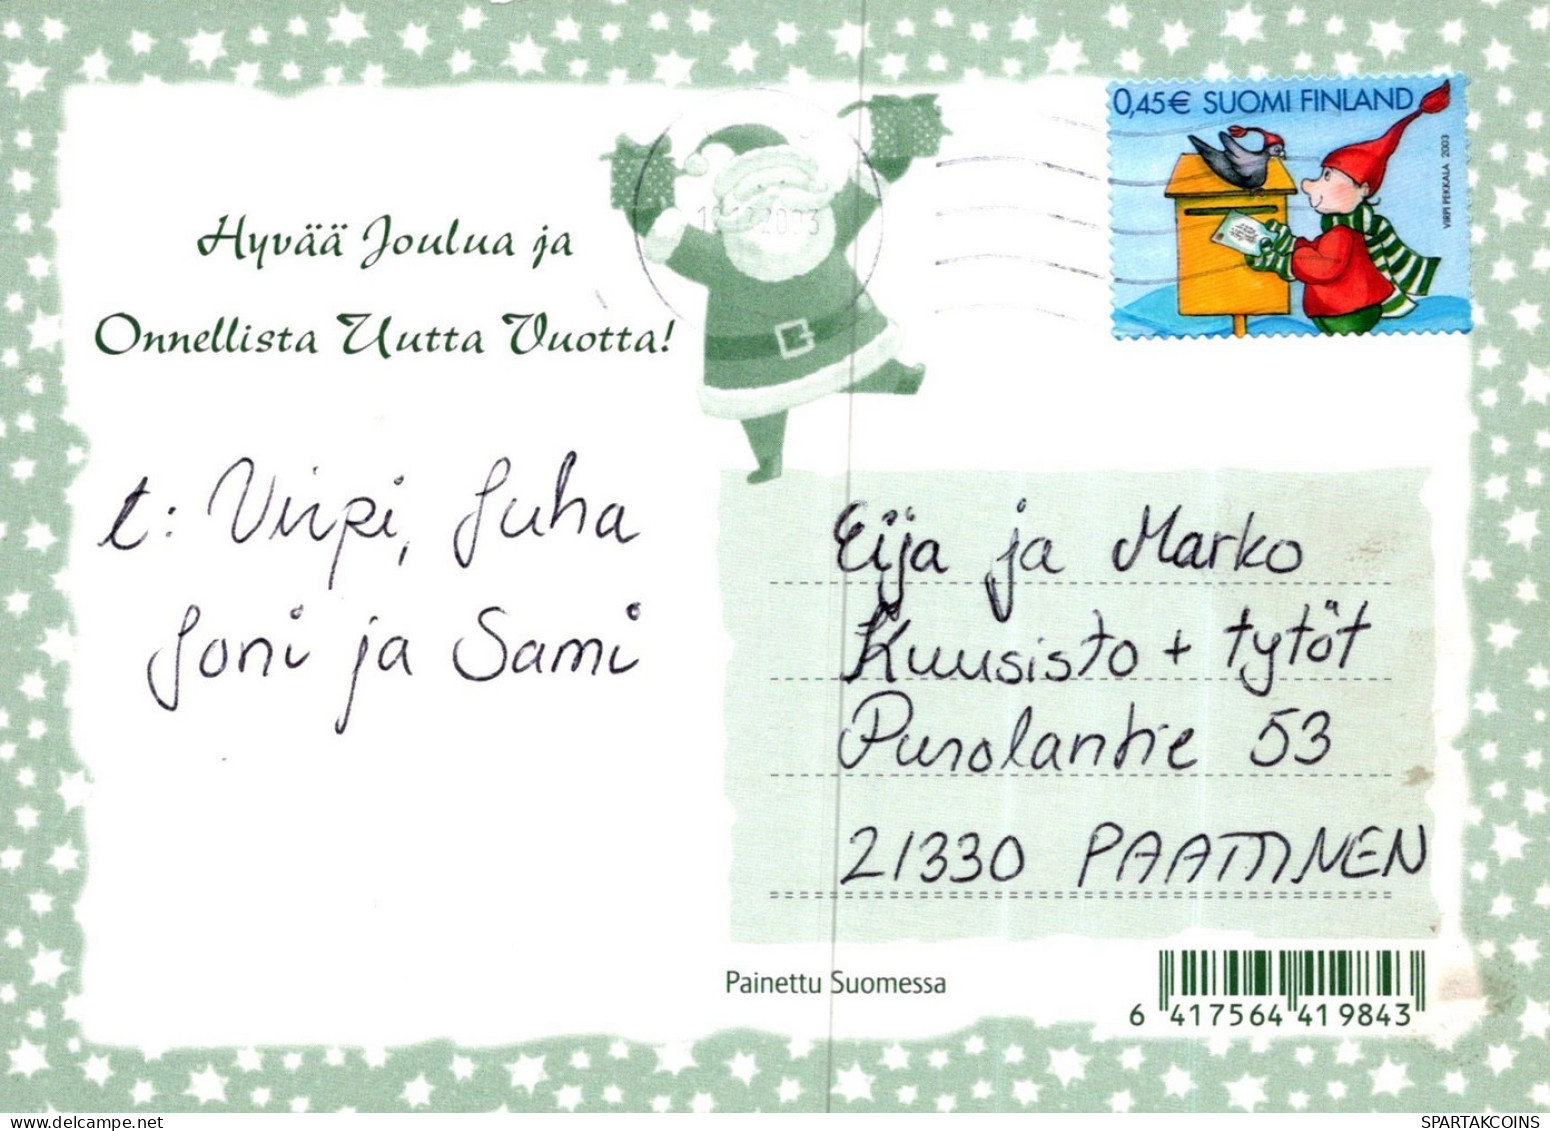 WEIHNACHTSMANN SANTA CLAUS KINDER WEIHNACHTSFERIEN Vintage Postkarte CPSM #PAK279.DE - Santa Claus